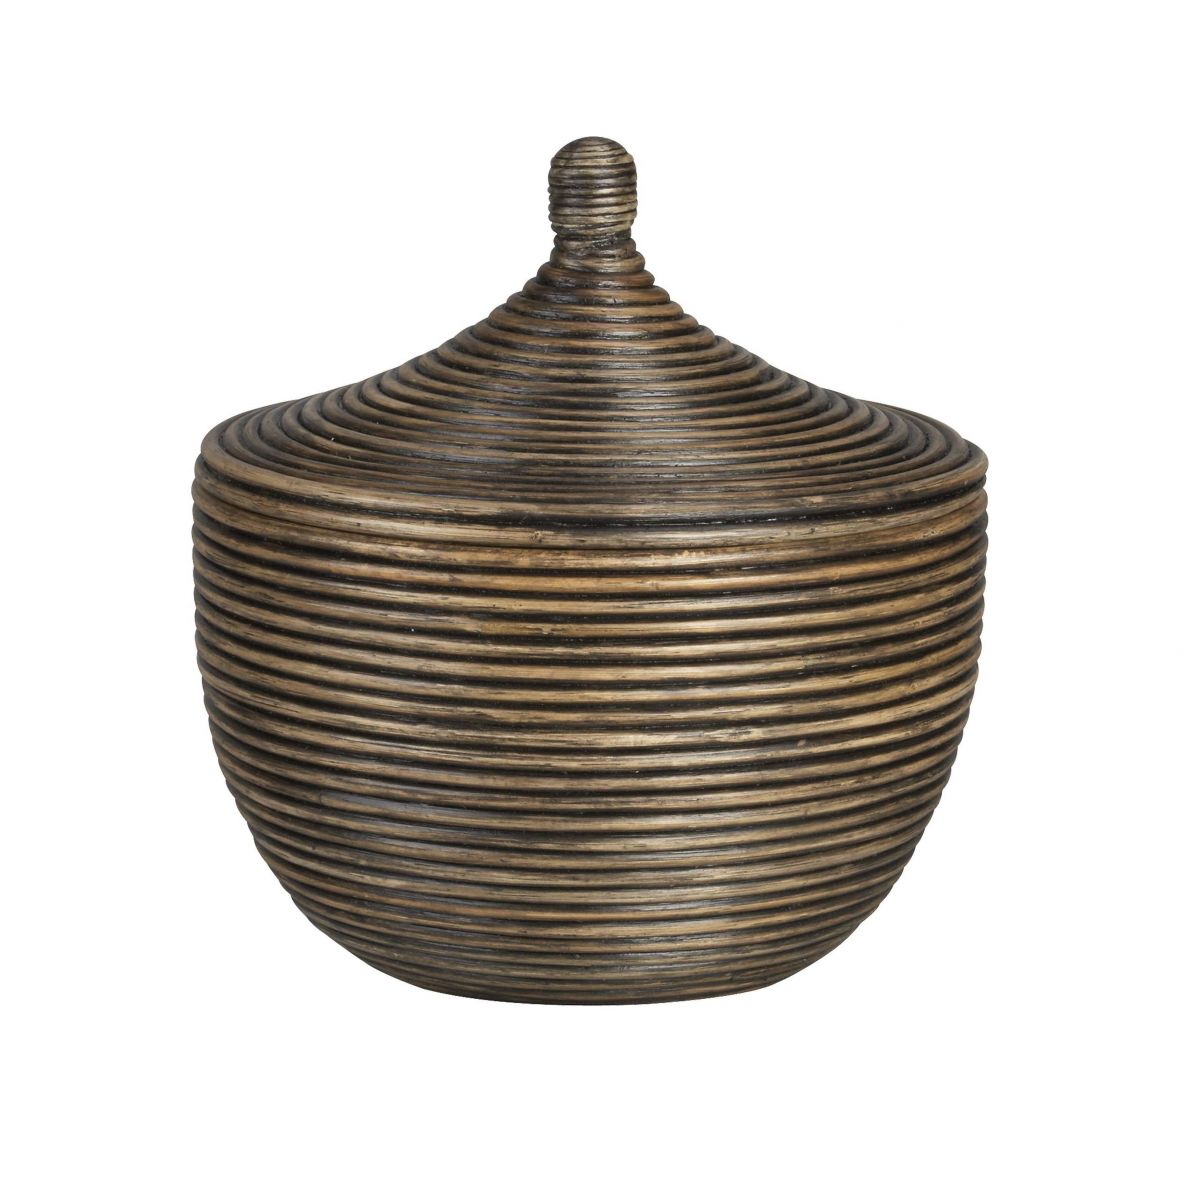 Coiled Lidded Basket # DK48